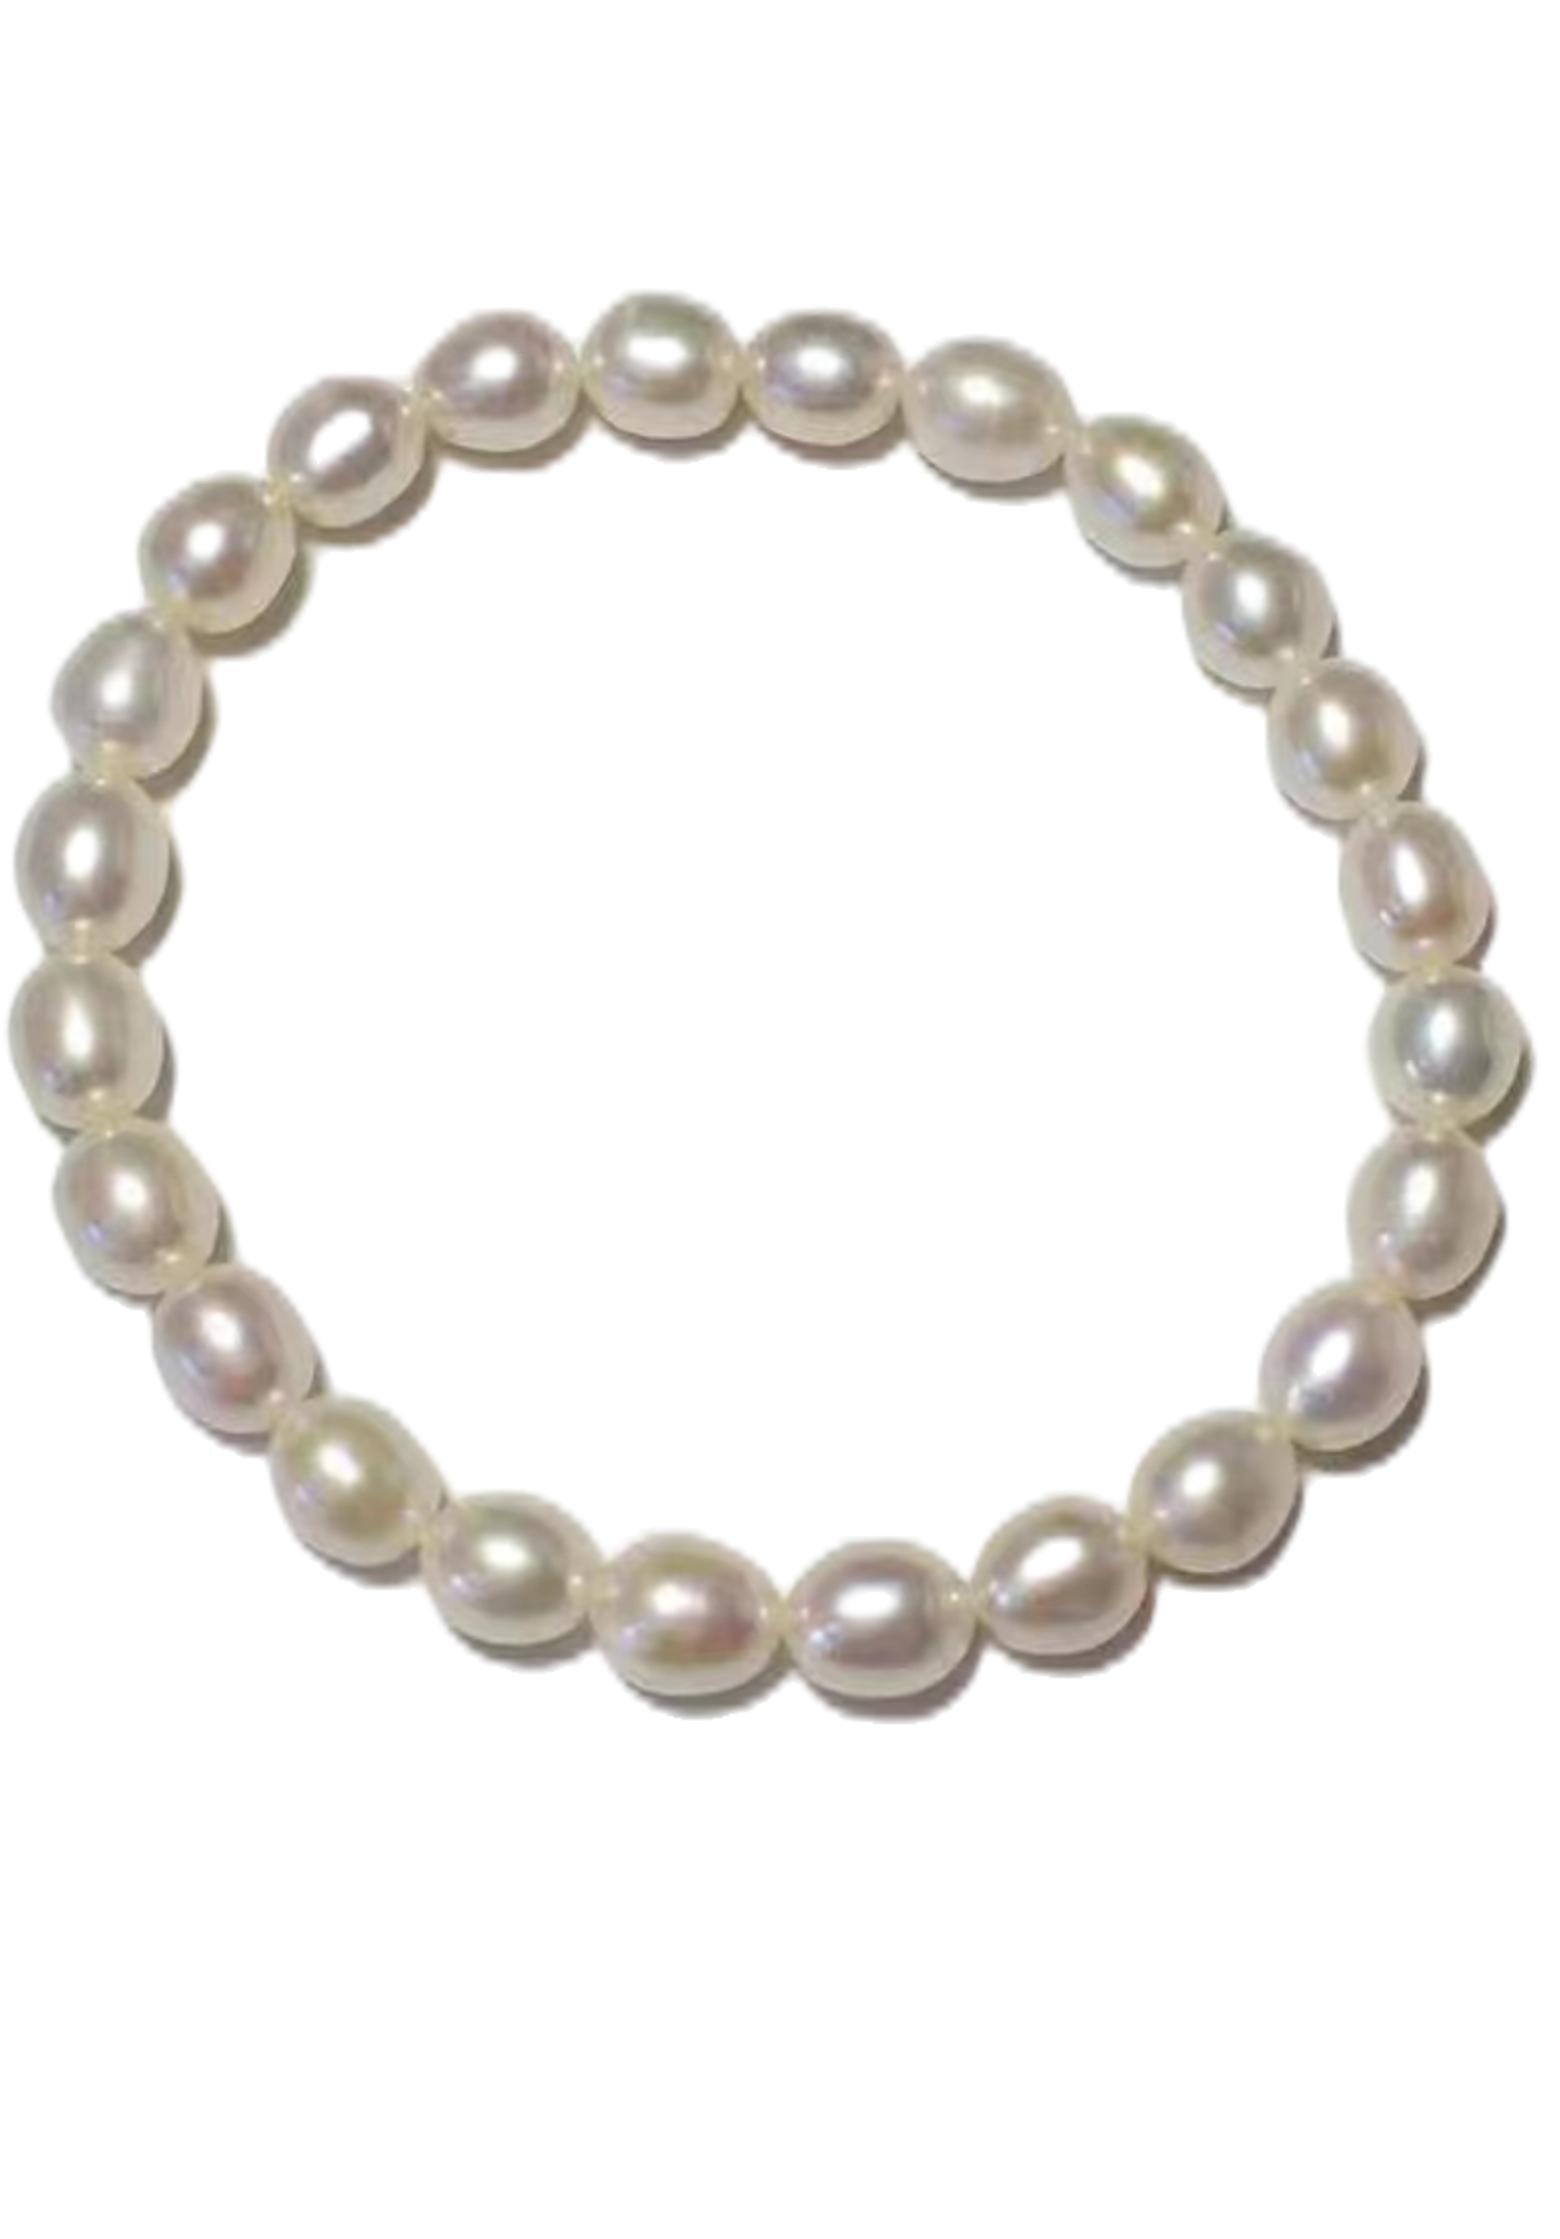 Corda elastica a mano fili di perline bracciale naturale perla d'acqua dolce a quattro colori selezione di colore viola rosa bianco regalo donne